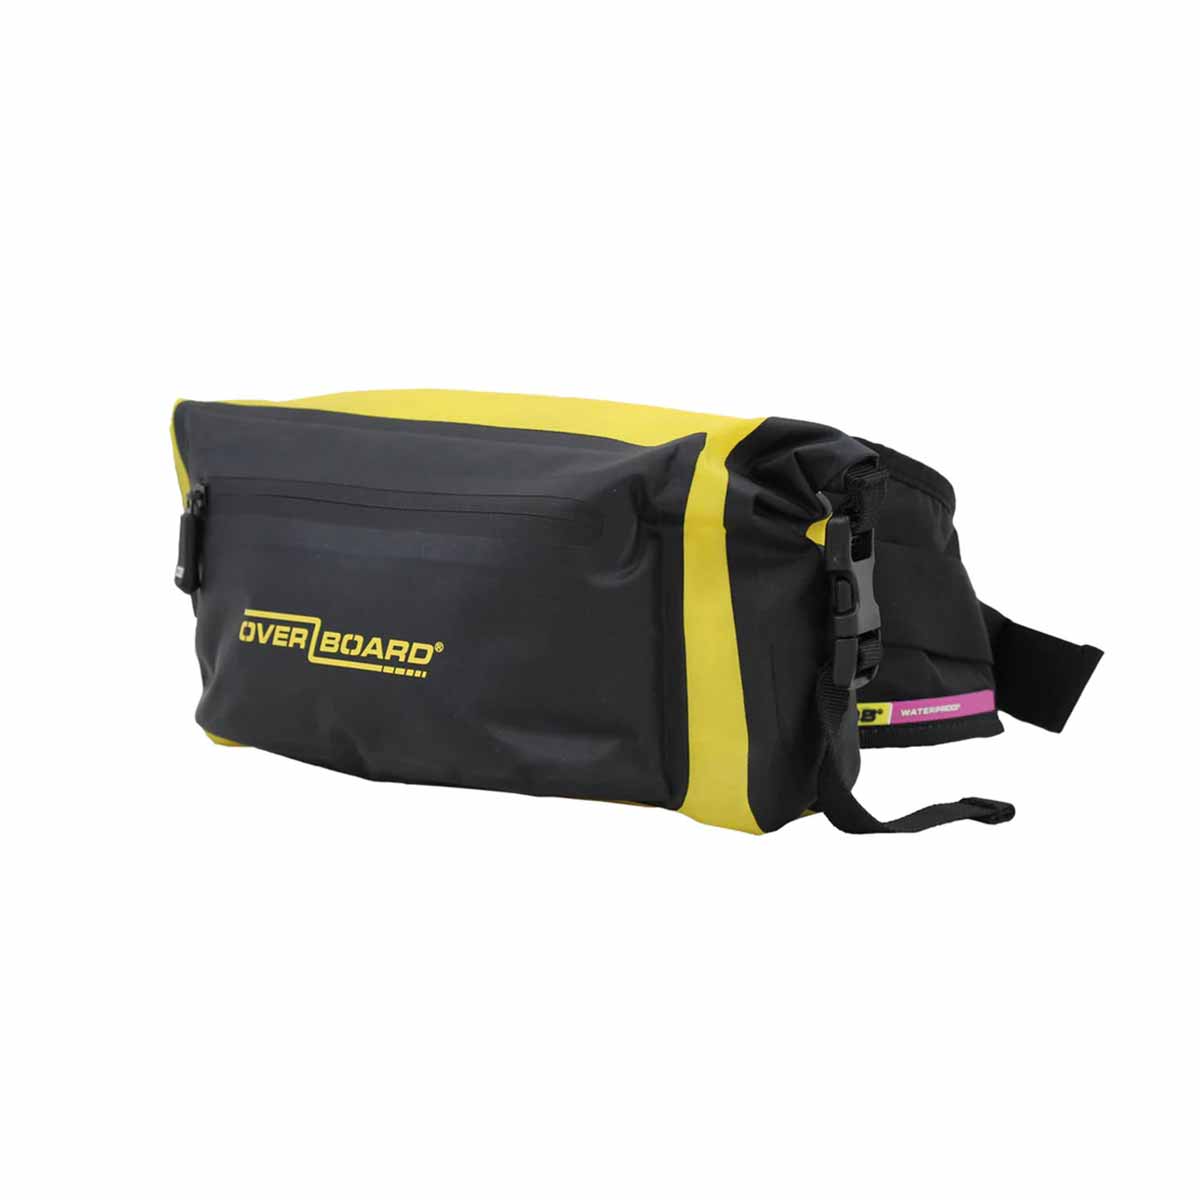 Overboard Waterproof Waist Pack – 4 liters, Yellow